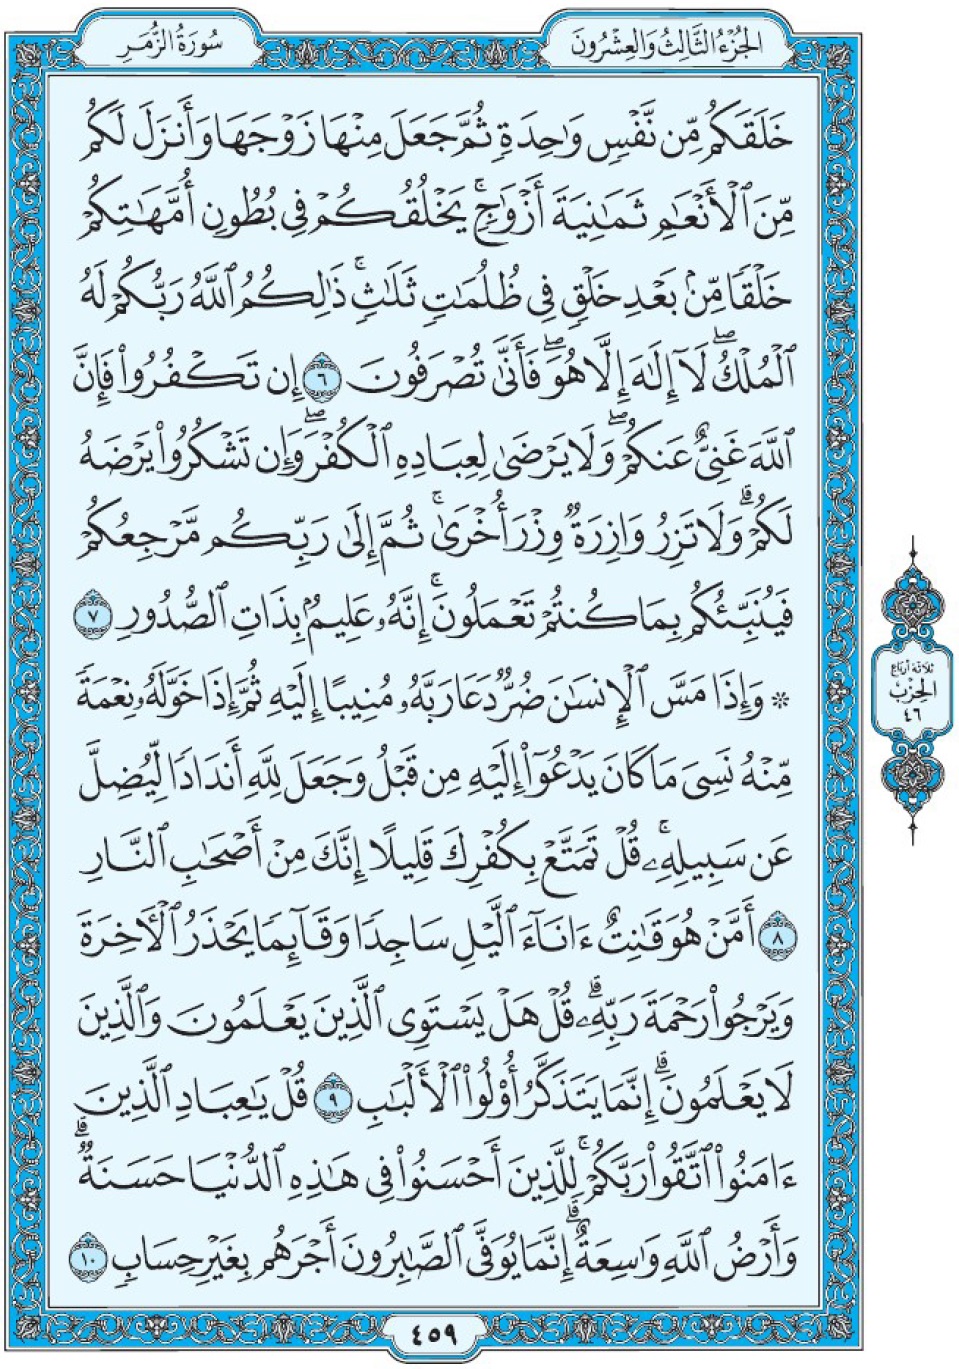 Коран Мединский мусхаф страница 459, Аз-Зумар, аят 6-10